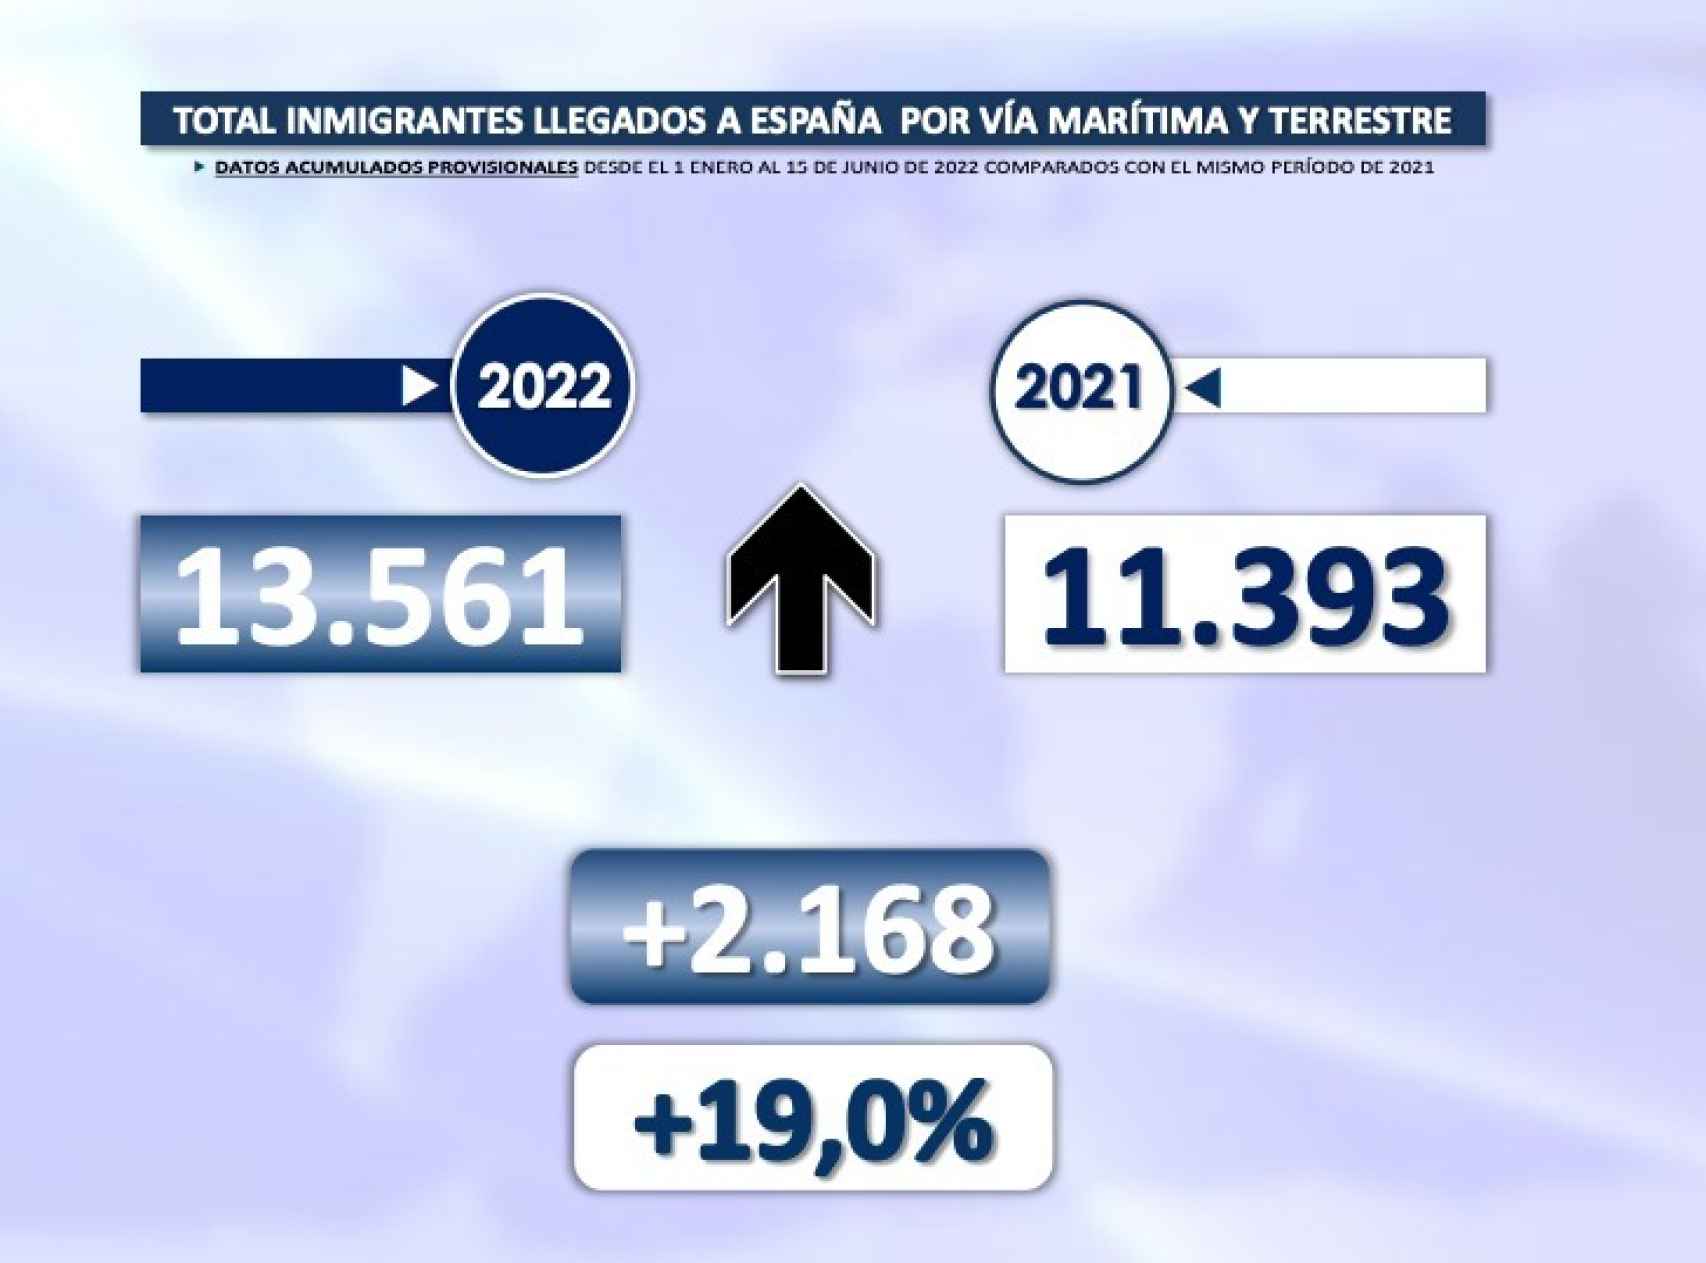 Datos completos de inmigrantes llegados en el primer semestre de 2021 y 2022.